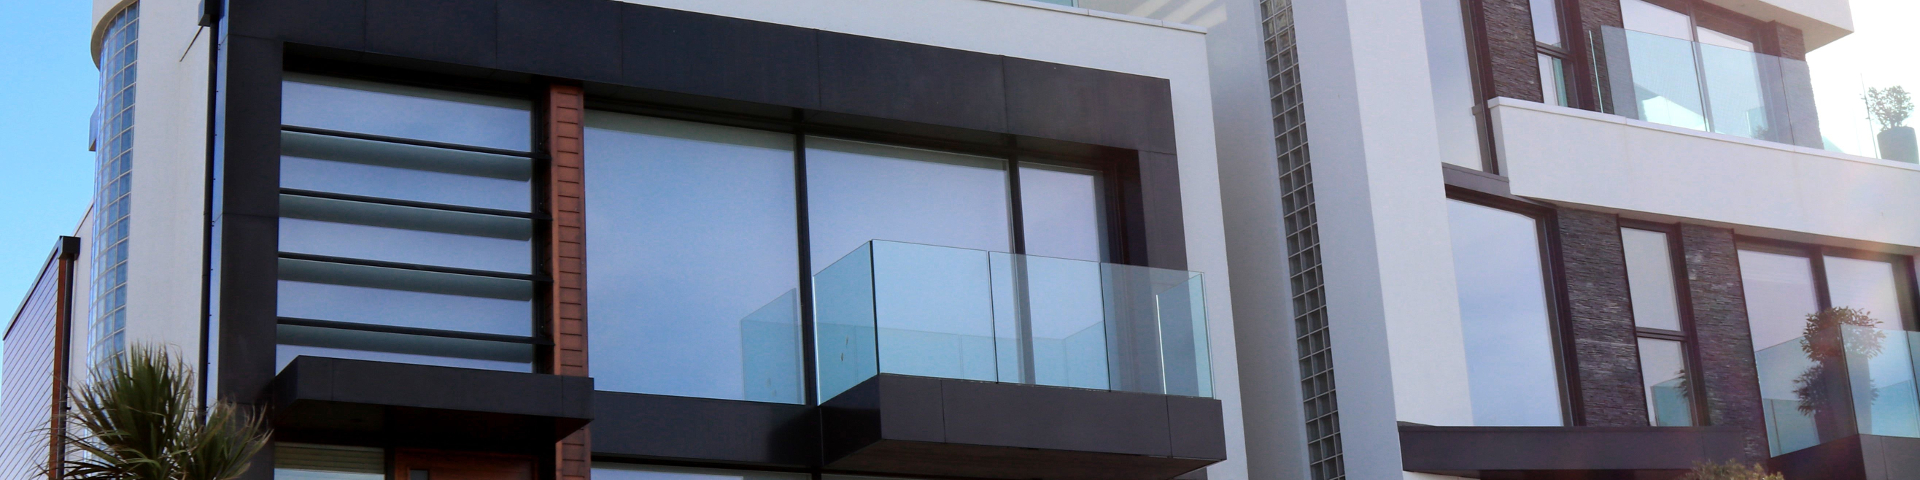 Poradnik użytkowania i konserwacji okien - ROLETEO Serwis rolet, okien, drzwi i bram garażowych